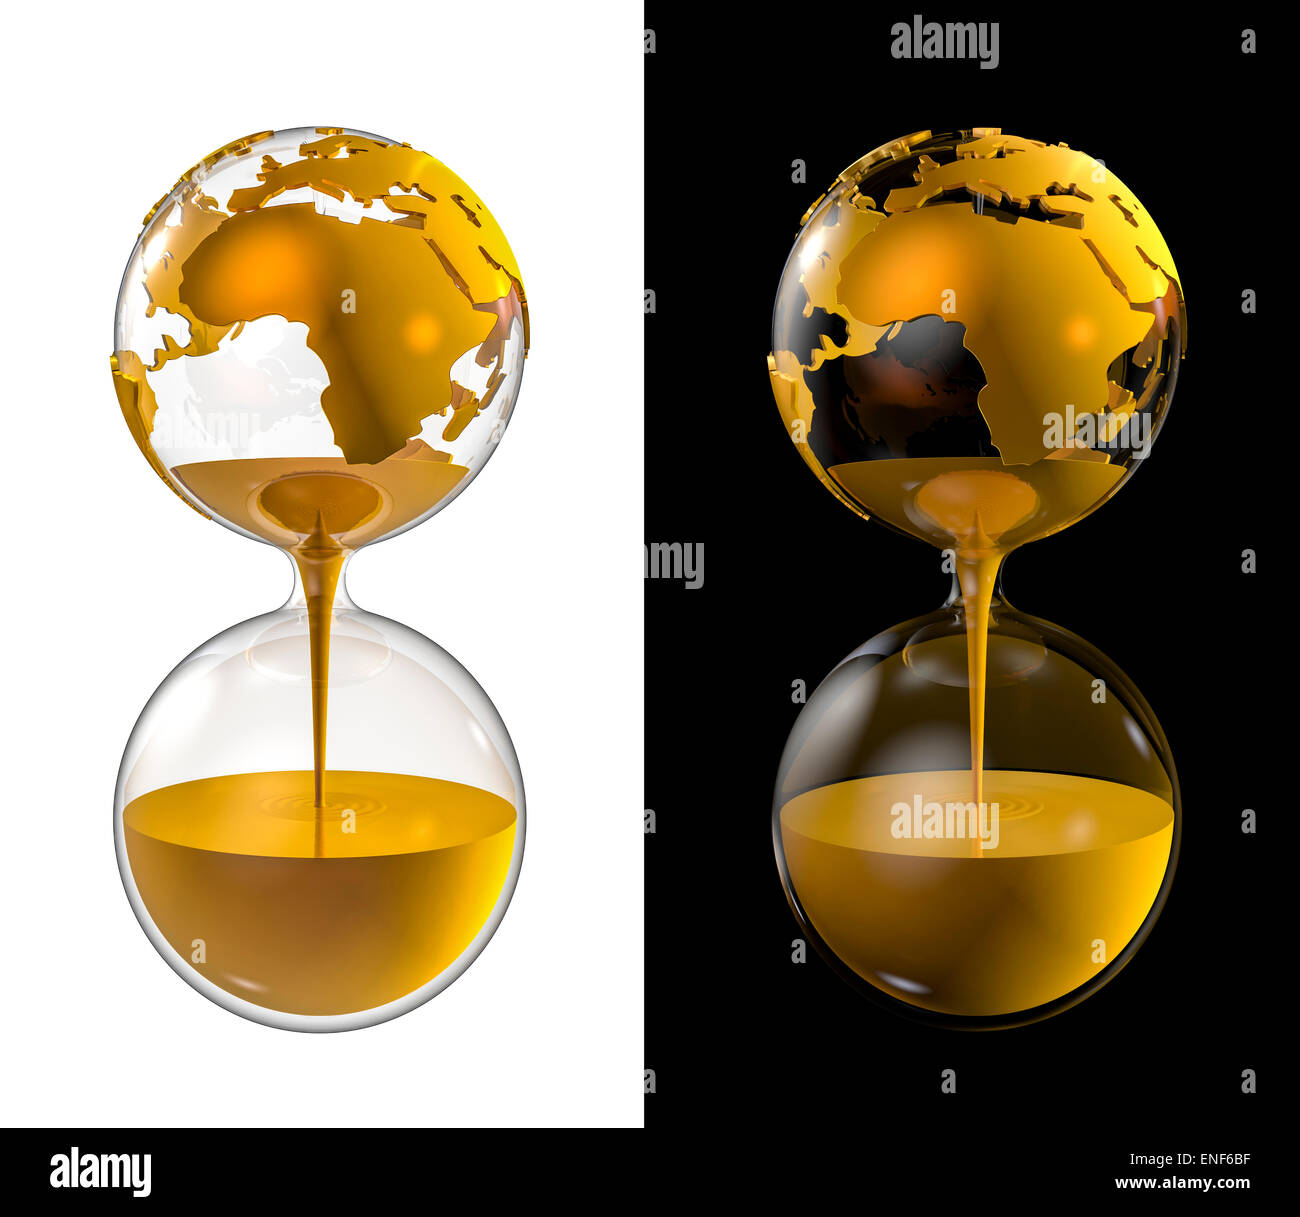 3D Render de globo terráqueo como el reloj de arena llena de oro Foto de stock